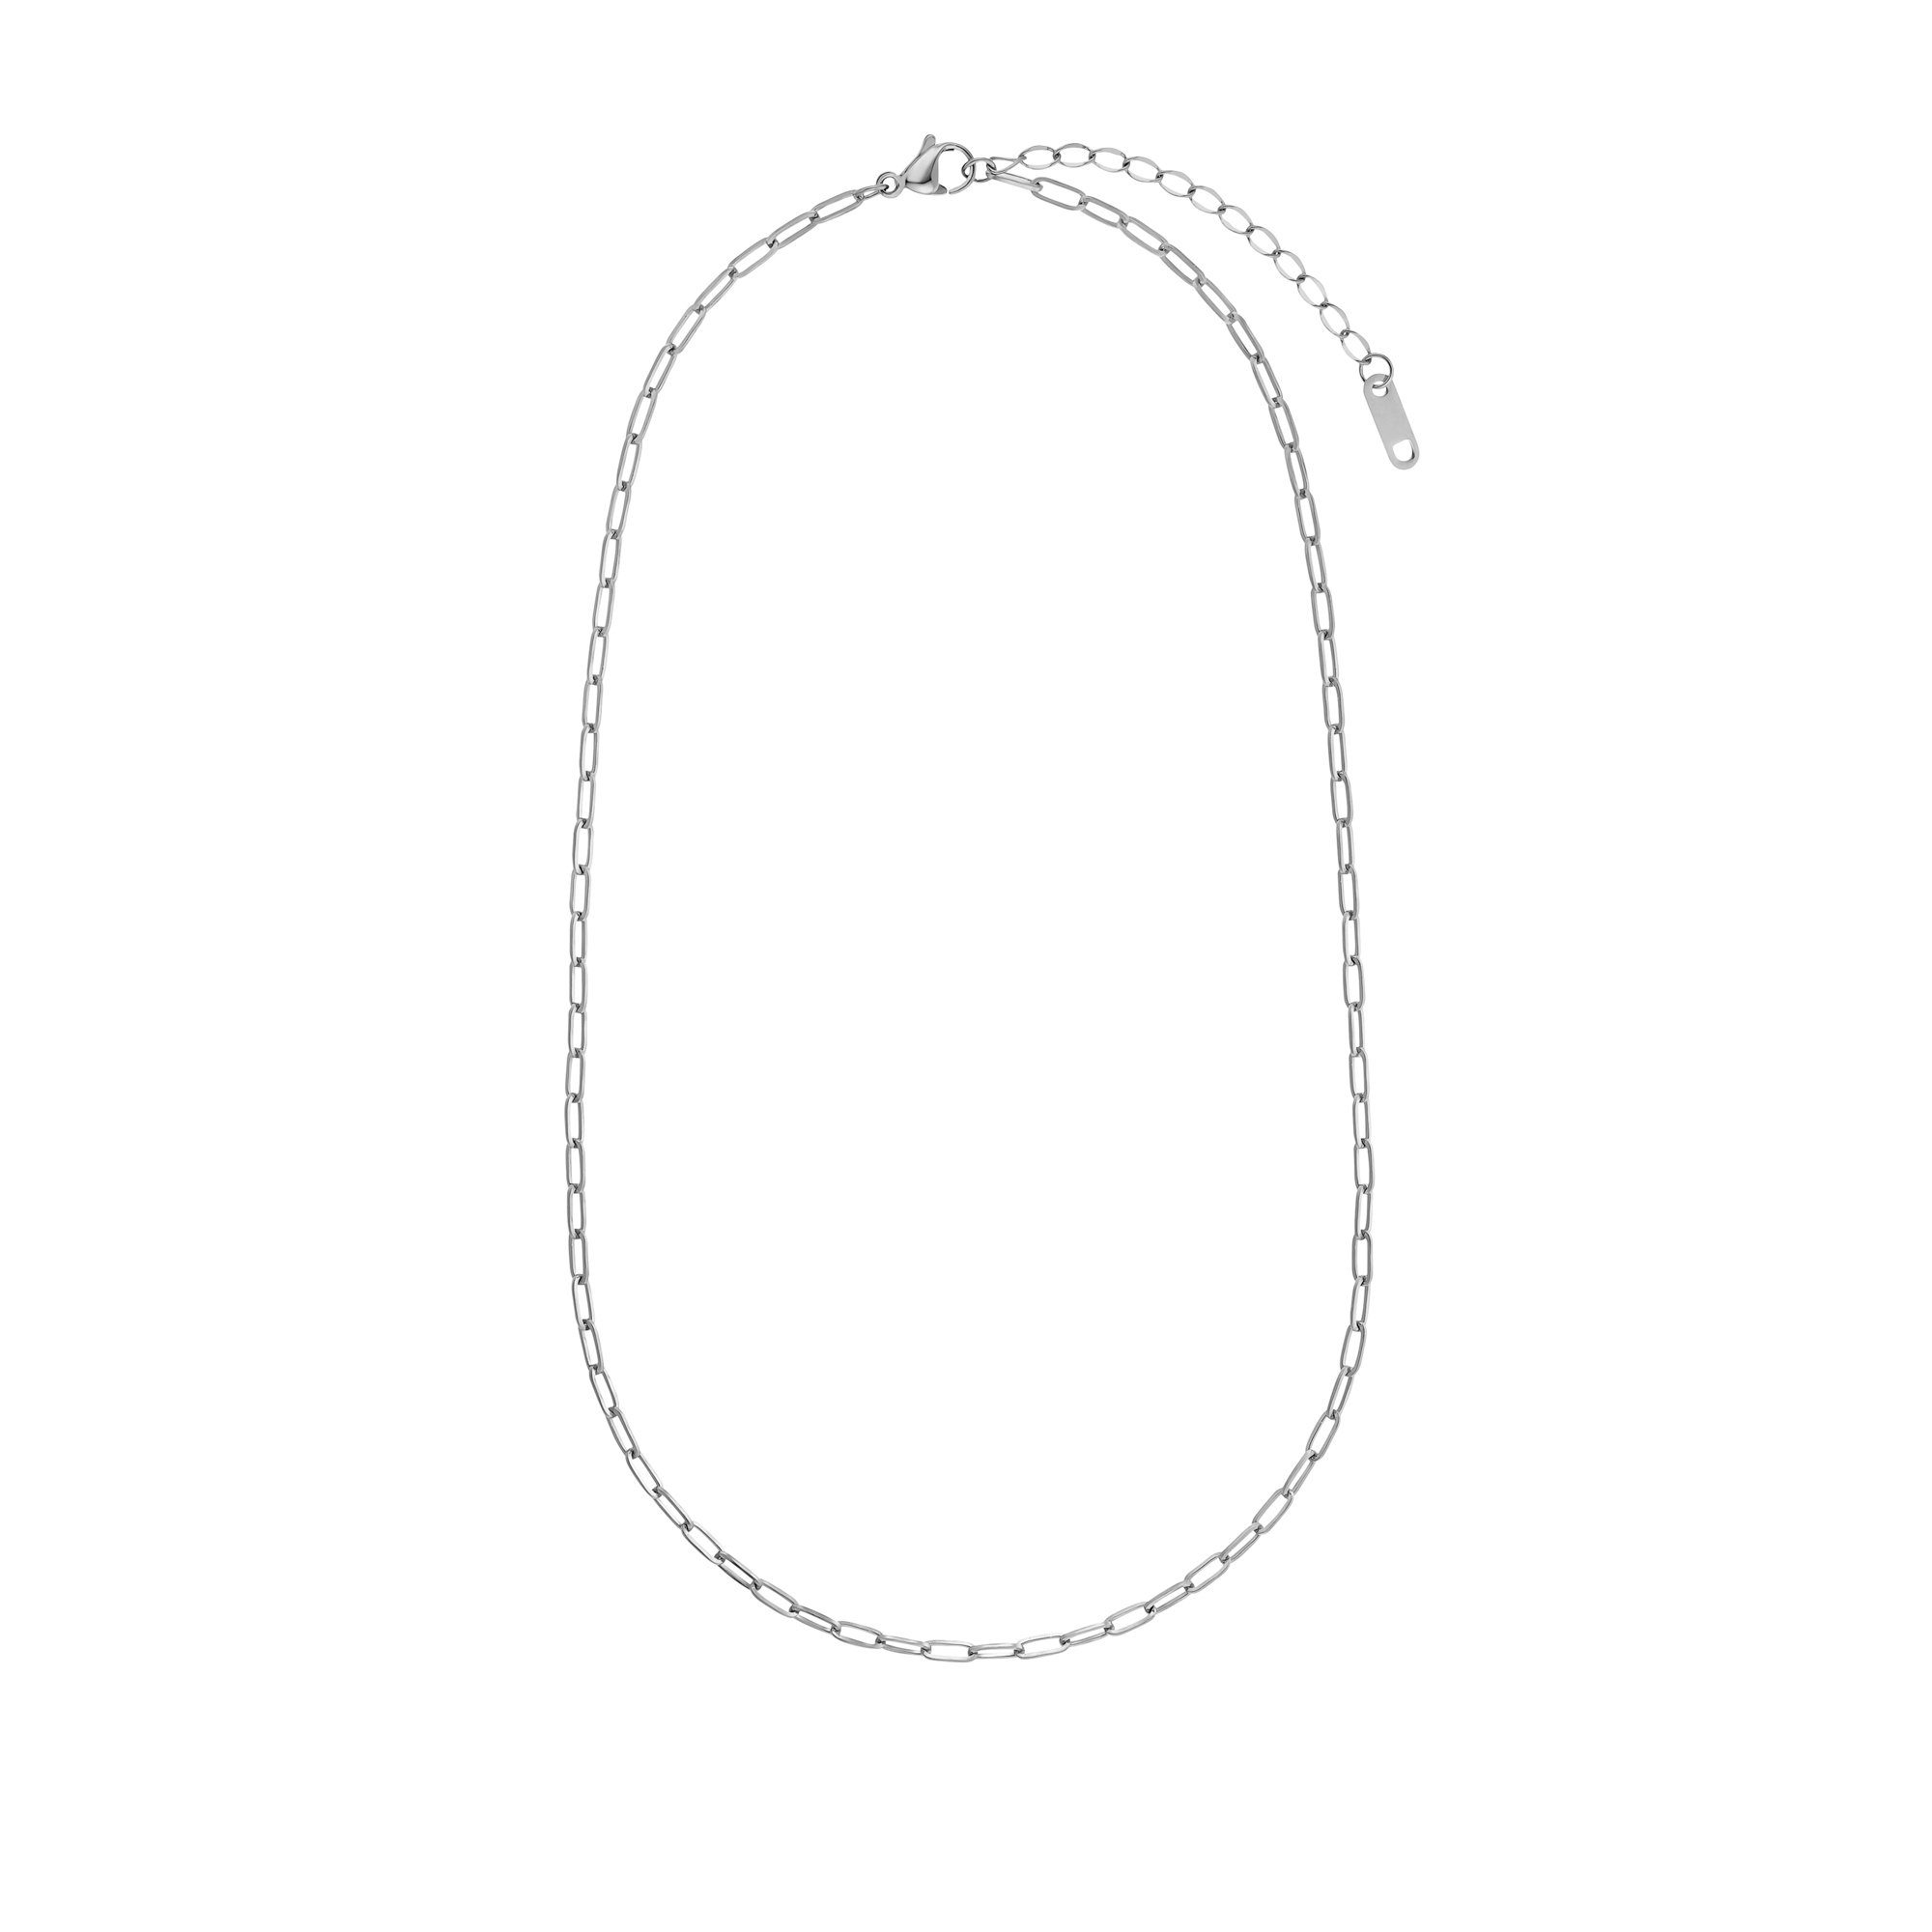 Heideman Collier Lana schwarz farben (inkl. Geschenkverpackung), Halskette für Frauen silberfarben poliert